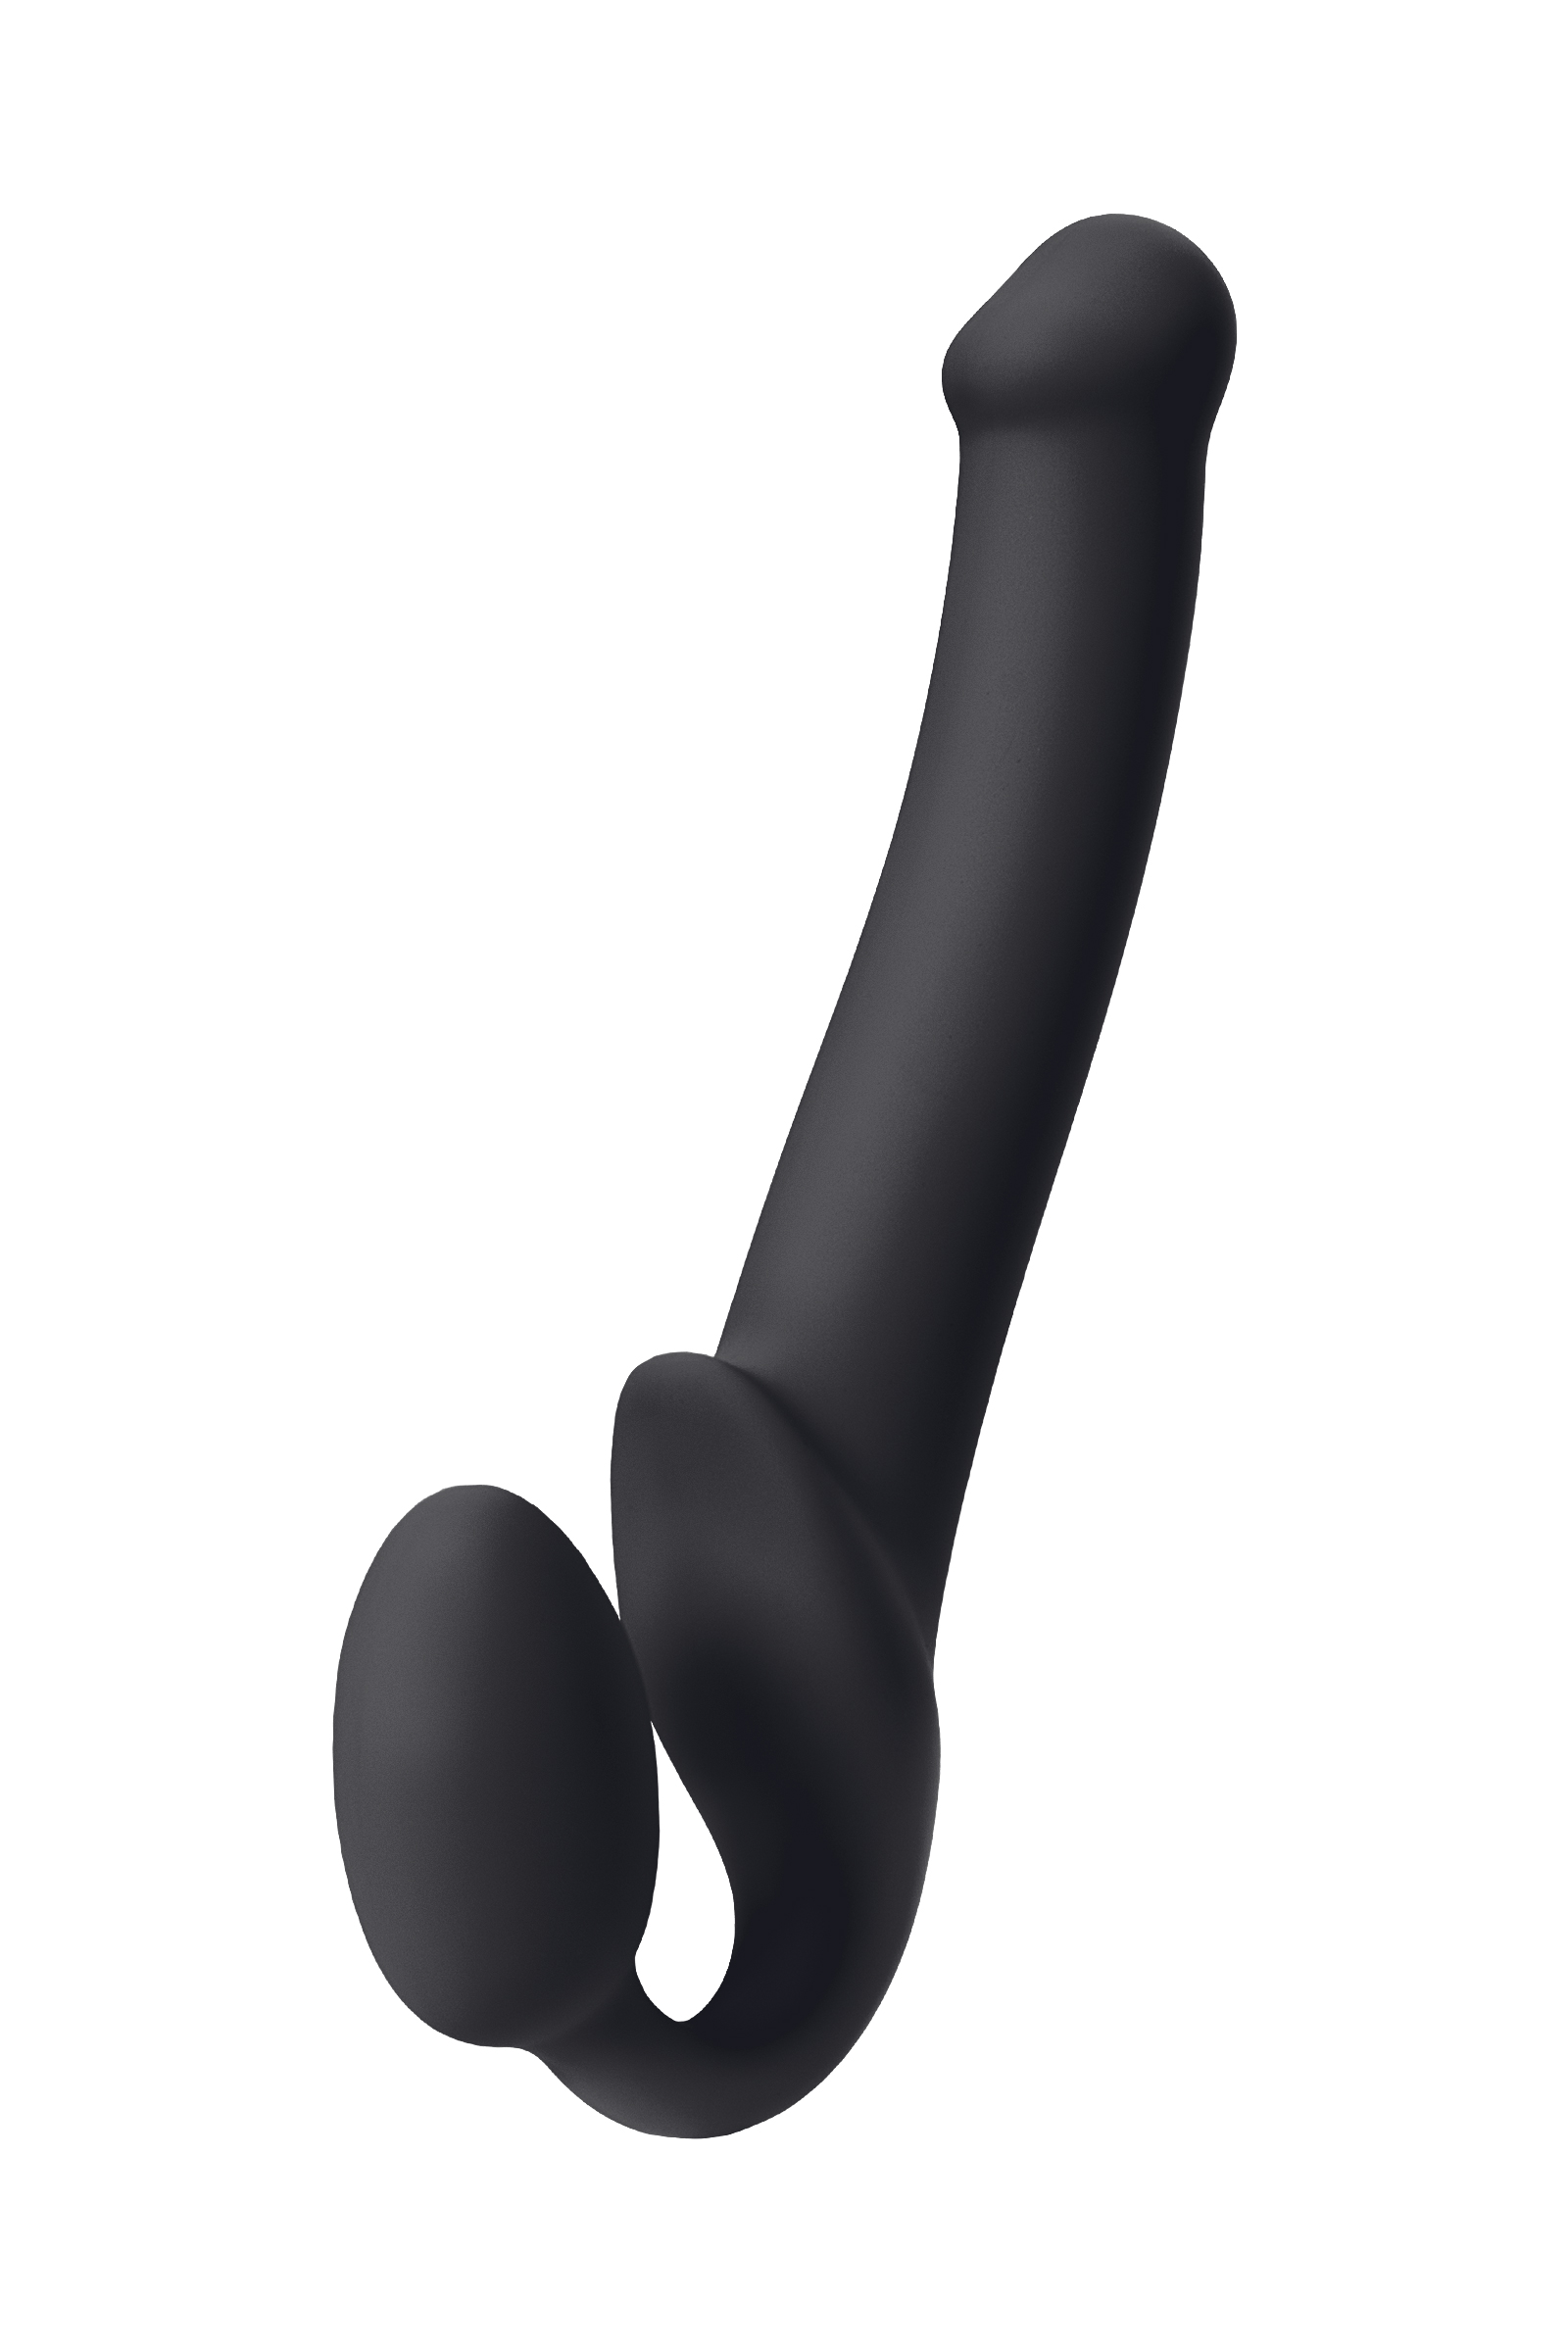 Безремневой нереалистичный страпон Strap-on-me, M, силикон, черный, 24,5 см. Фото N3